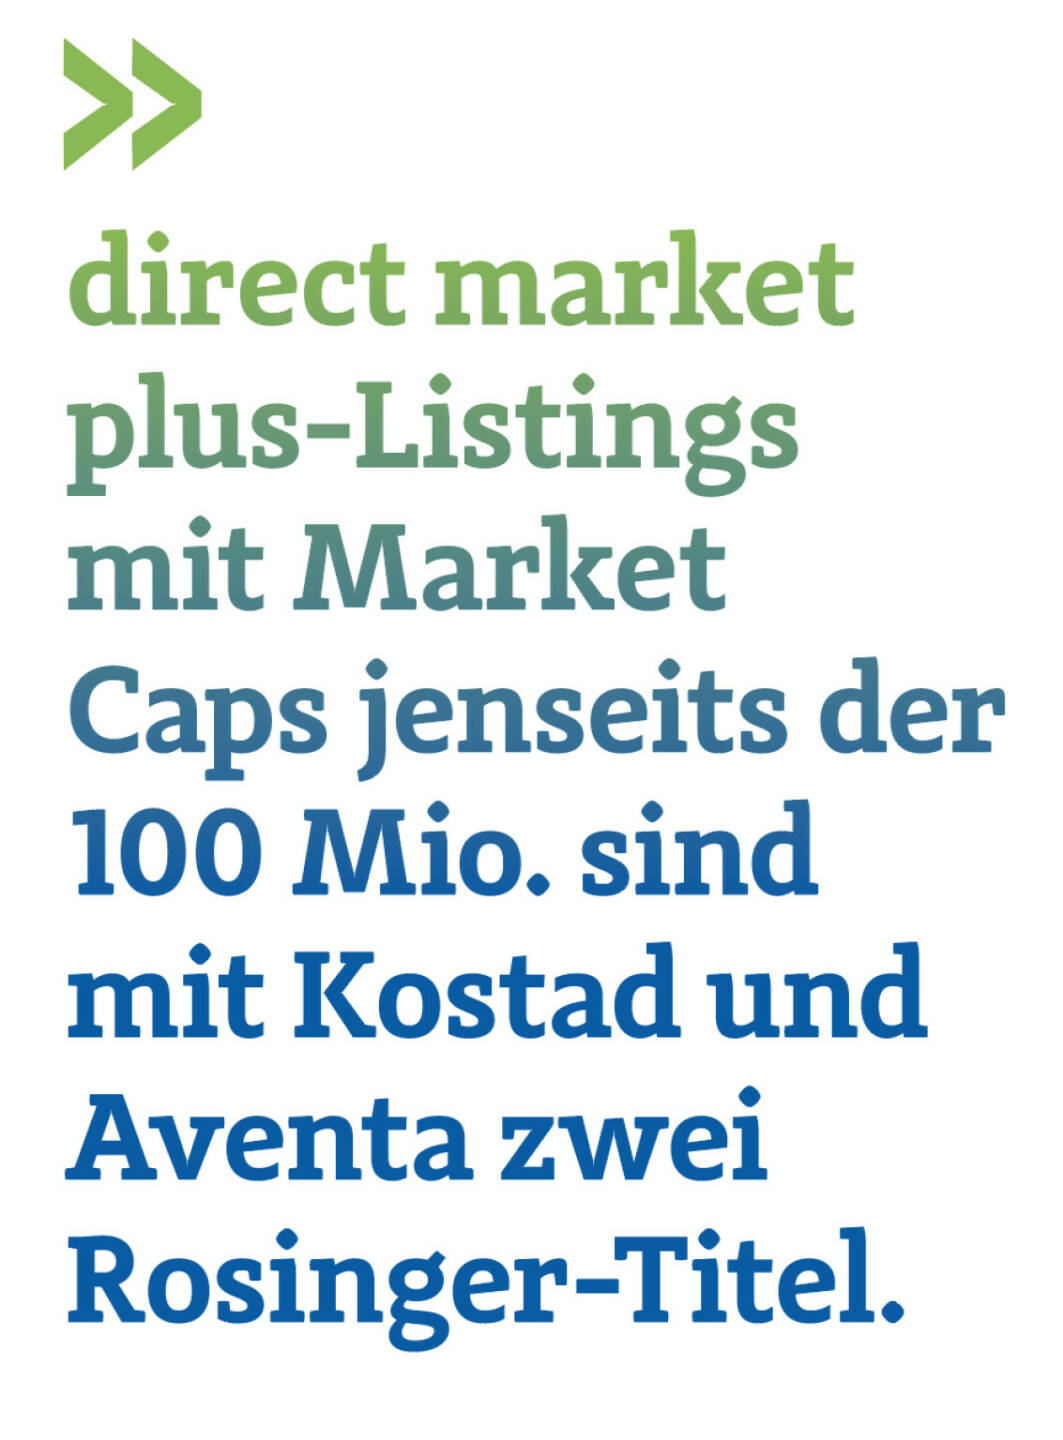 Direct market plus-Listings mit Market Caps jenseits der 100 Mio. sind mit Kostad und Aventa zwei Rosinger-Titel.
